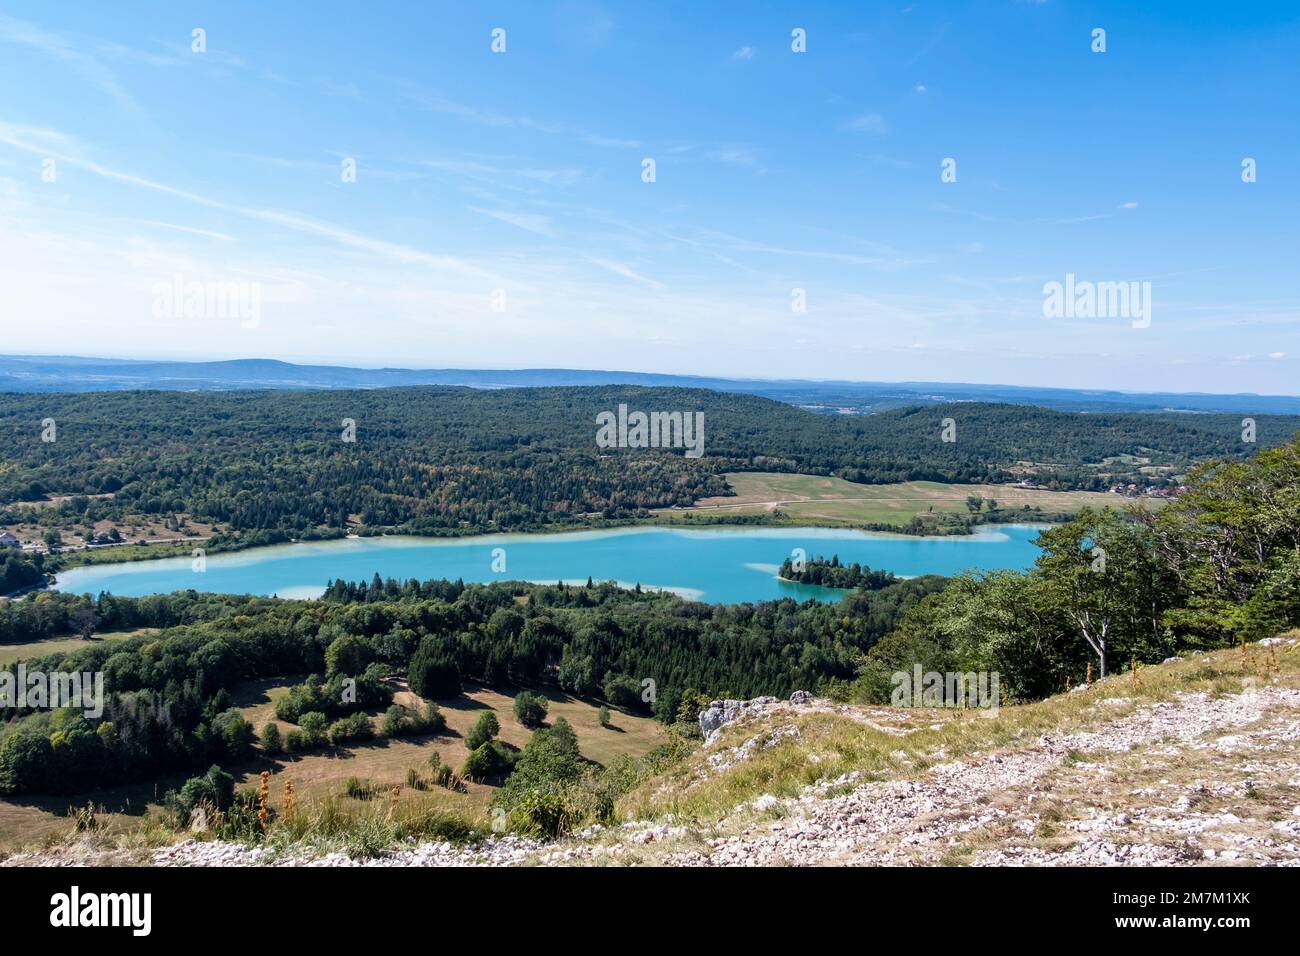 La Chaux-du-Dombief (central-eastern France): Lake Ilay viewed from the “Belvedere des quatre lacs” (Four Lakes Belvedere) on the “Pic de l’Aigle” mou Stock Photo